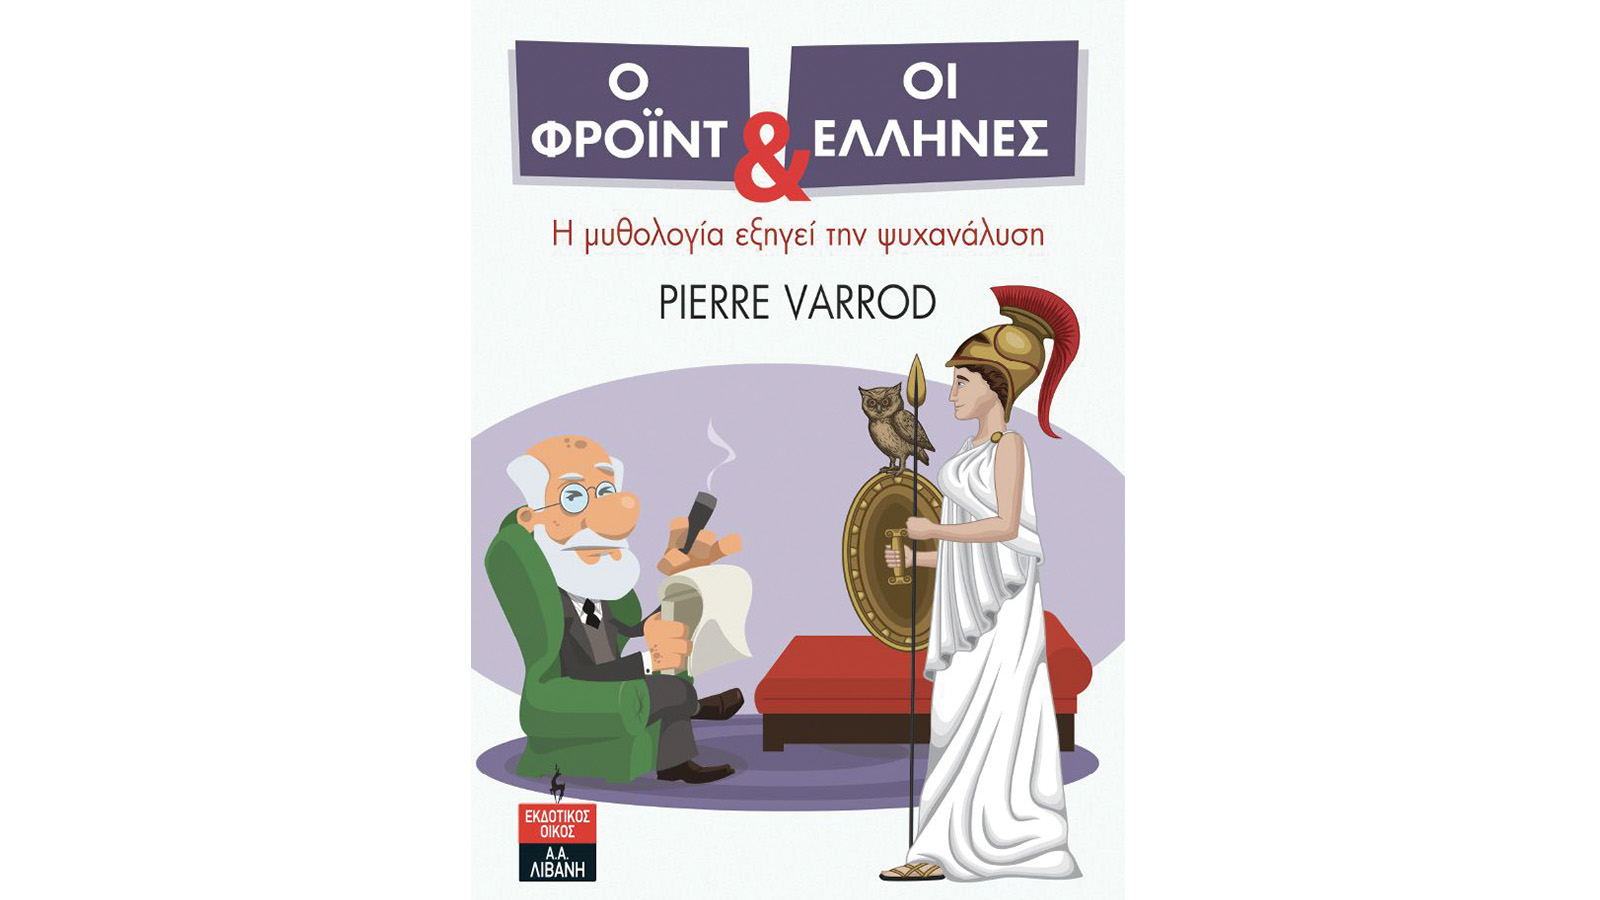 Ο Φρόιντ και οι Έλληνες, Pierre Varrod